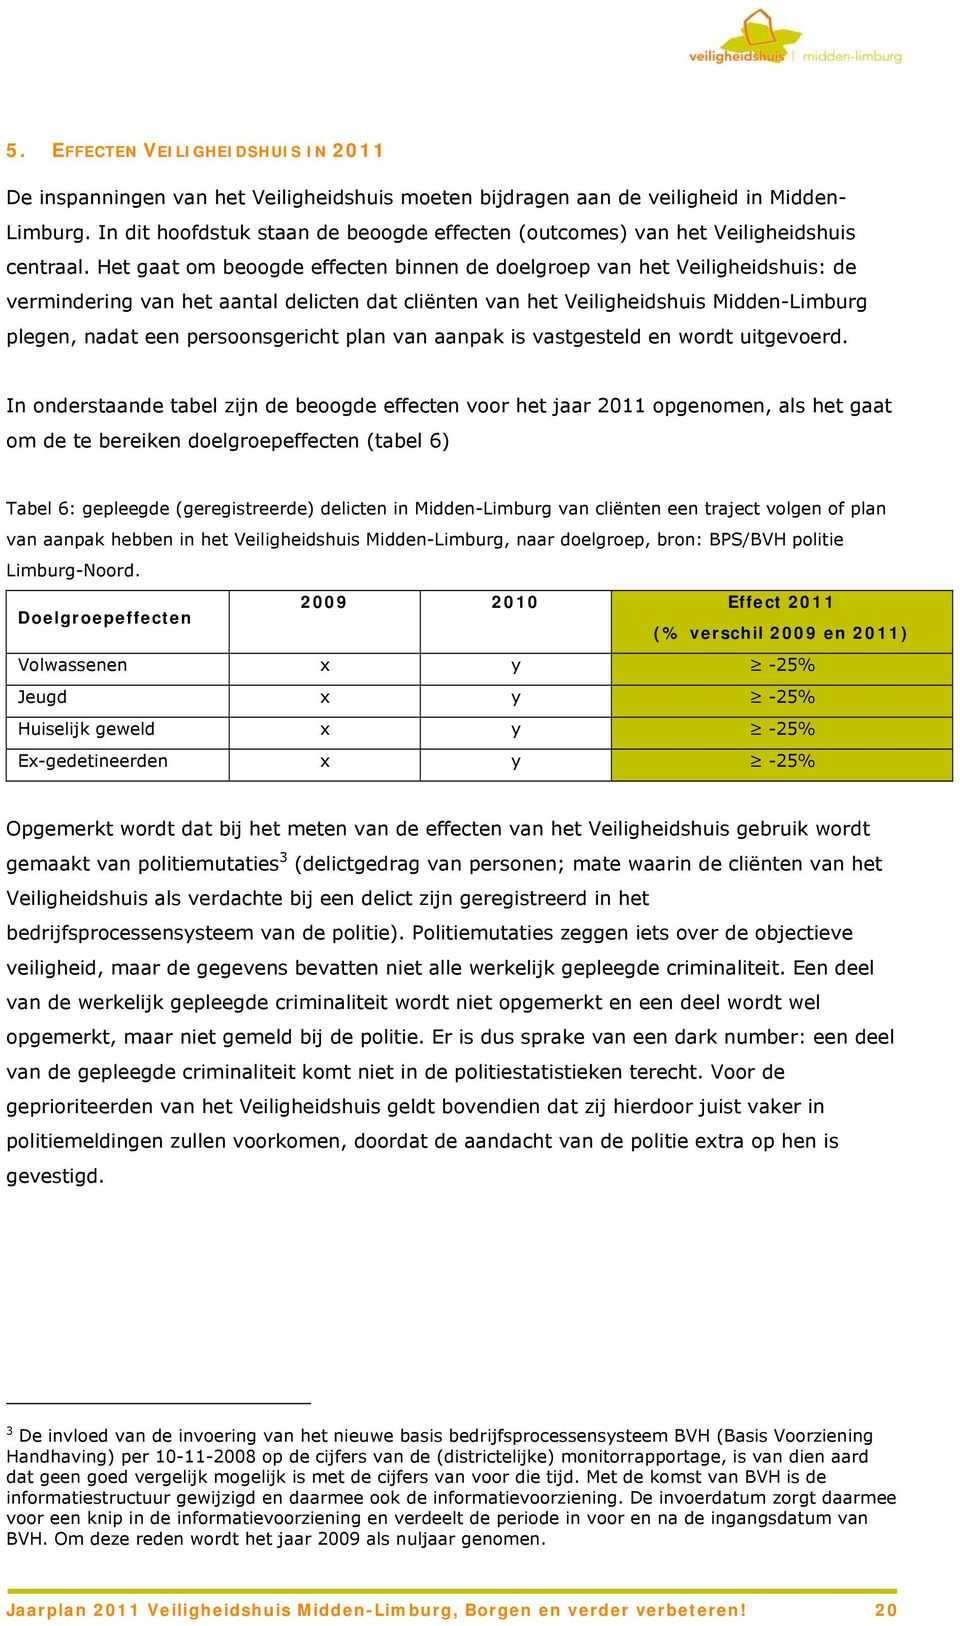 Het gaat om beoogde effecten binnen de doelgroep van het Veiligheidshuis: de vermindering van het aantal delicten dat cliënten van het Veiligheidshuis Midden-Limburg plegen, nadat een persoonsgericht